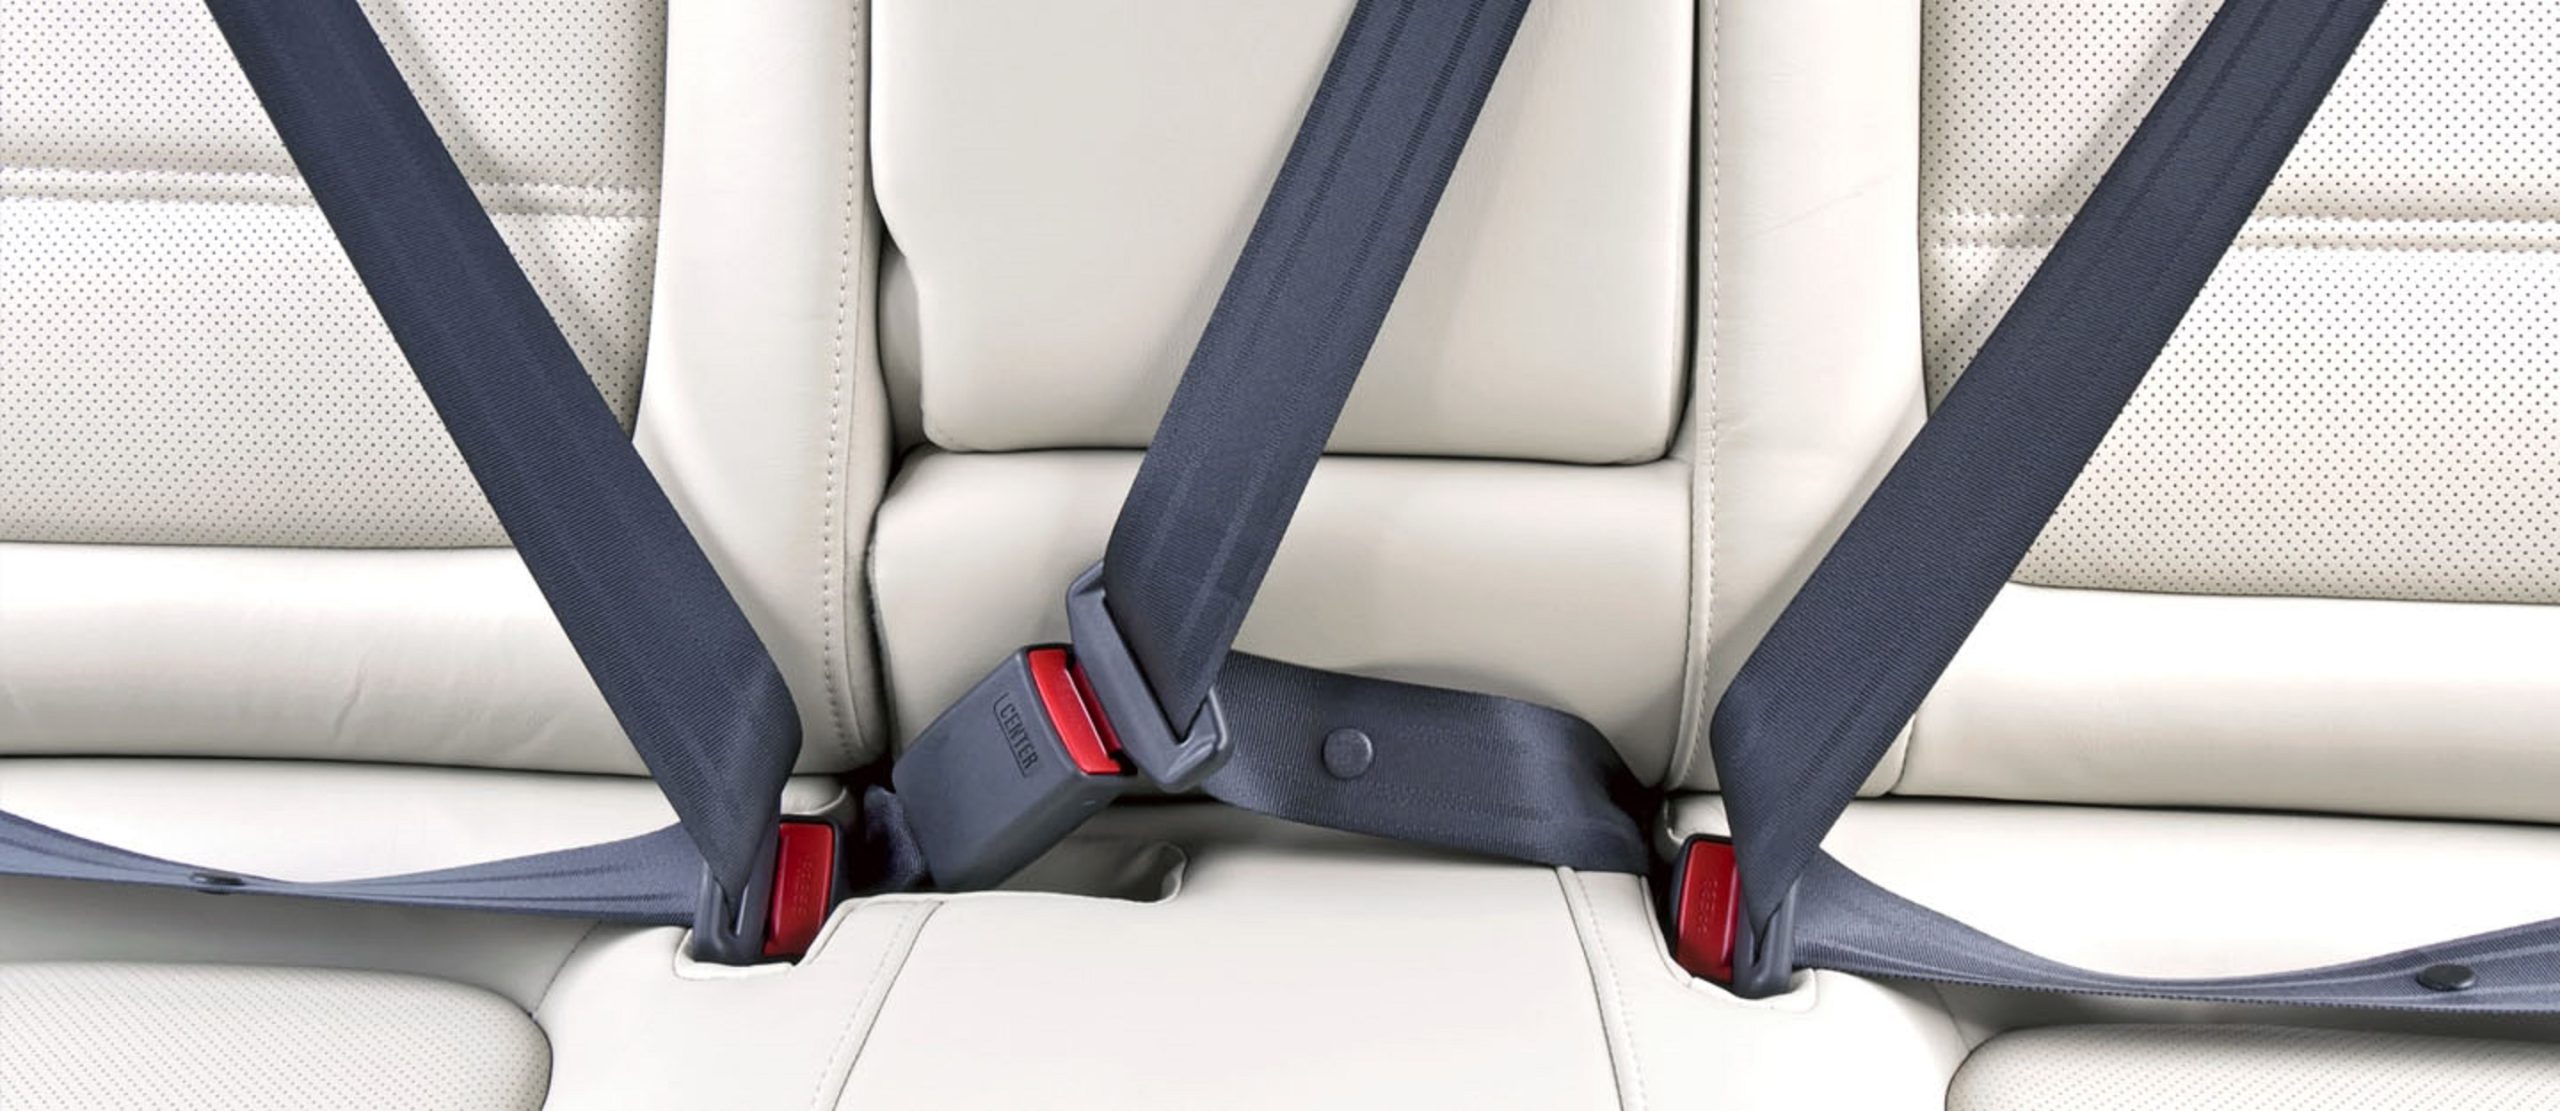 Трехточечный ремень безопасности. Seat Belt. Ремни безопасности системы Belt-in-Seat (bis). Car Safety Seat Belt. Ремень безопасности трехточечный ЛИАЗ.